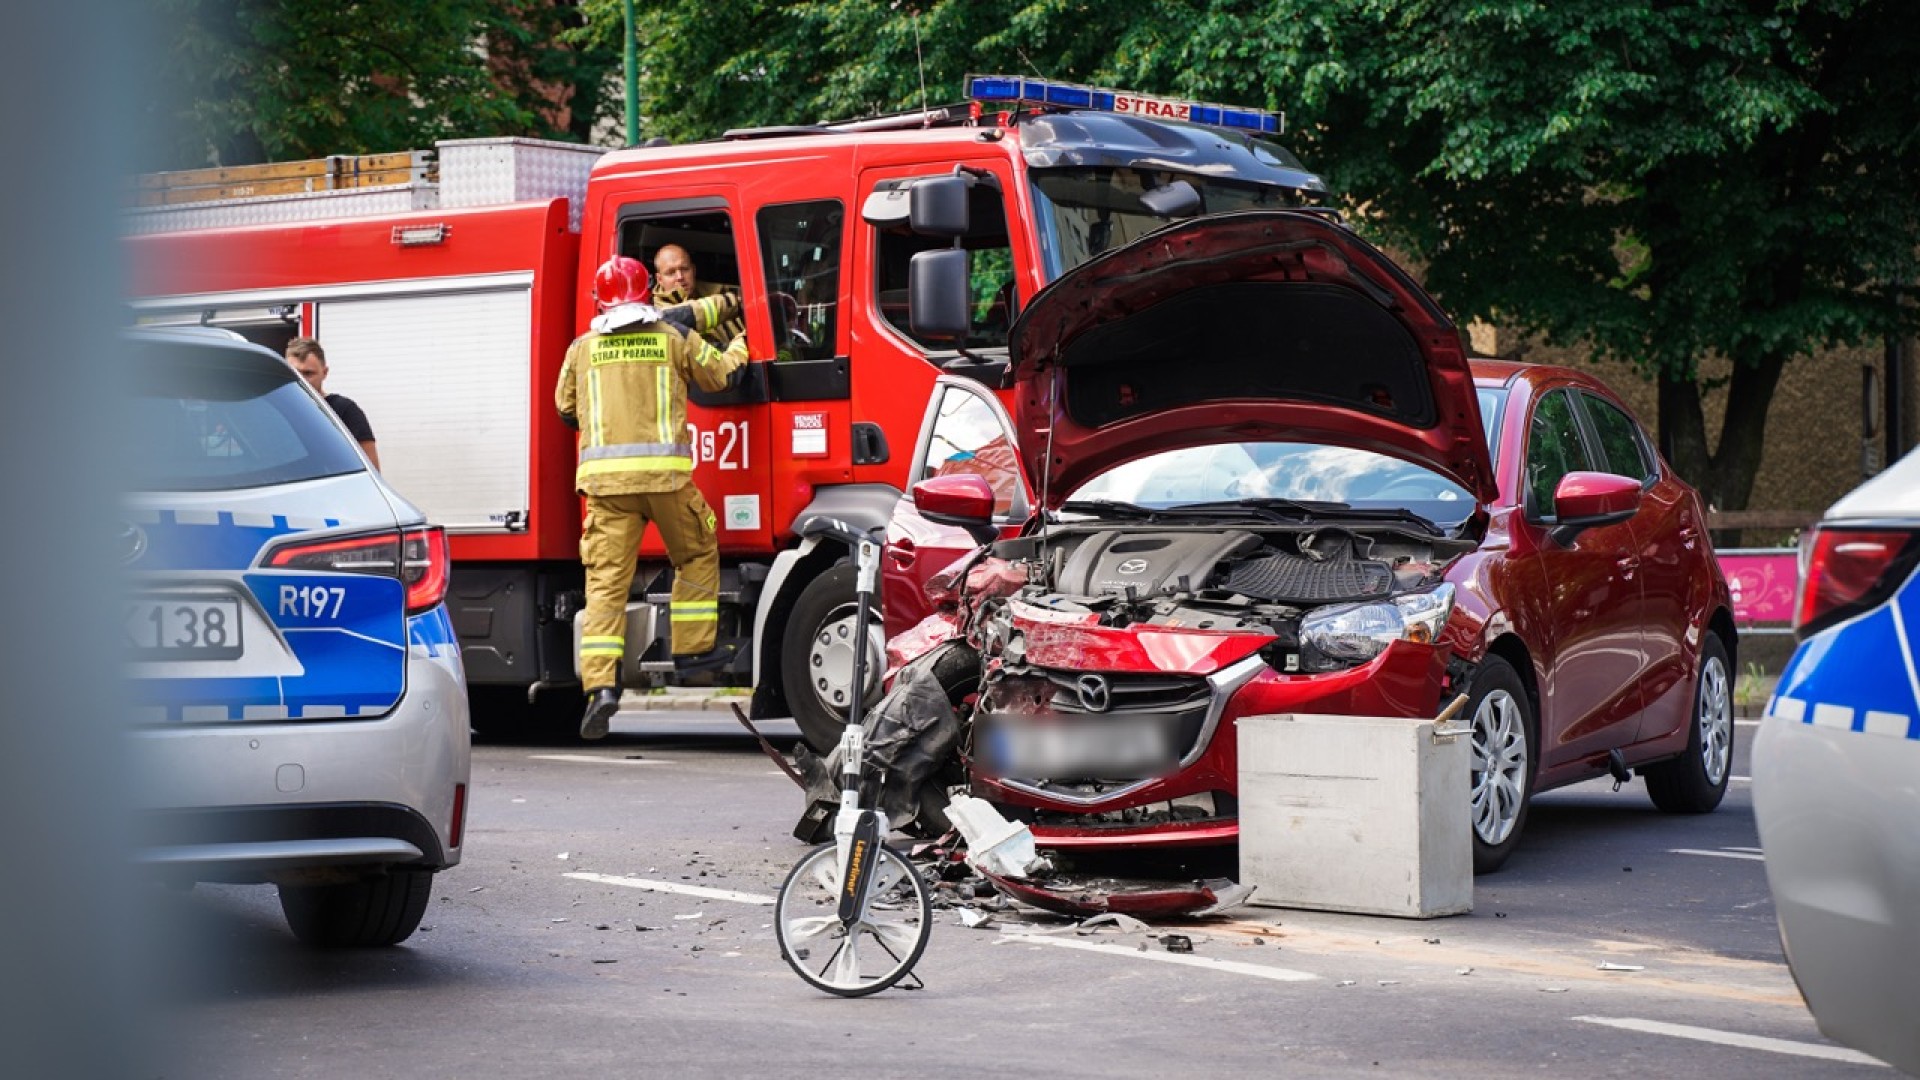 wypadek na skrzyżowaniu ulic Mickiewicza i Sokolskiej w Katowicach - rozbity samochód, policja i straż pożarna